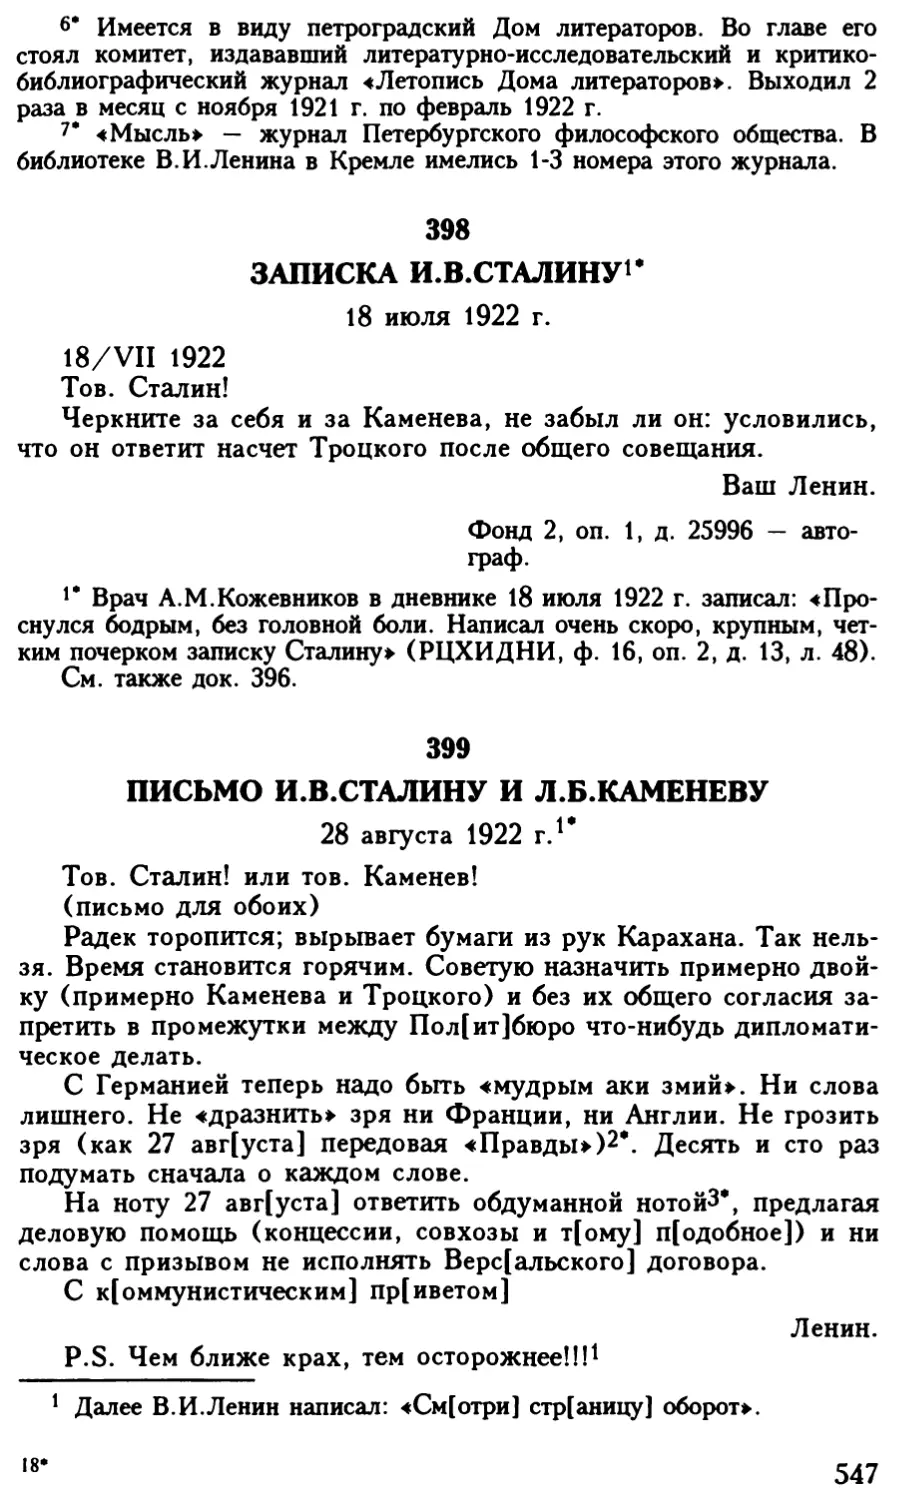 399. Письмо И.В.Сталину и Л.Б.Каменеву. 28 августа 1922 г